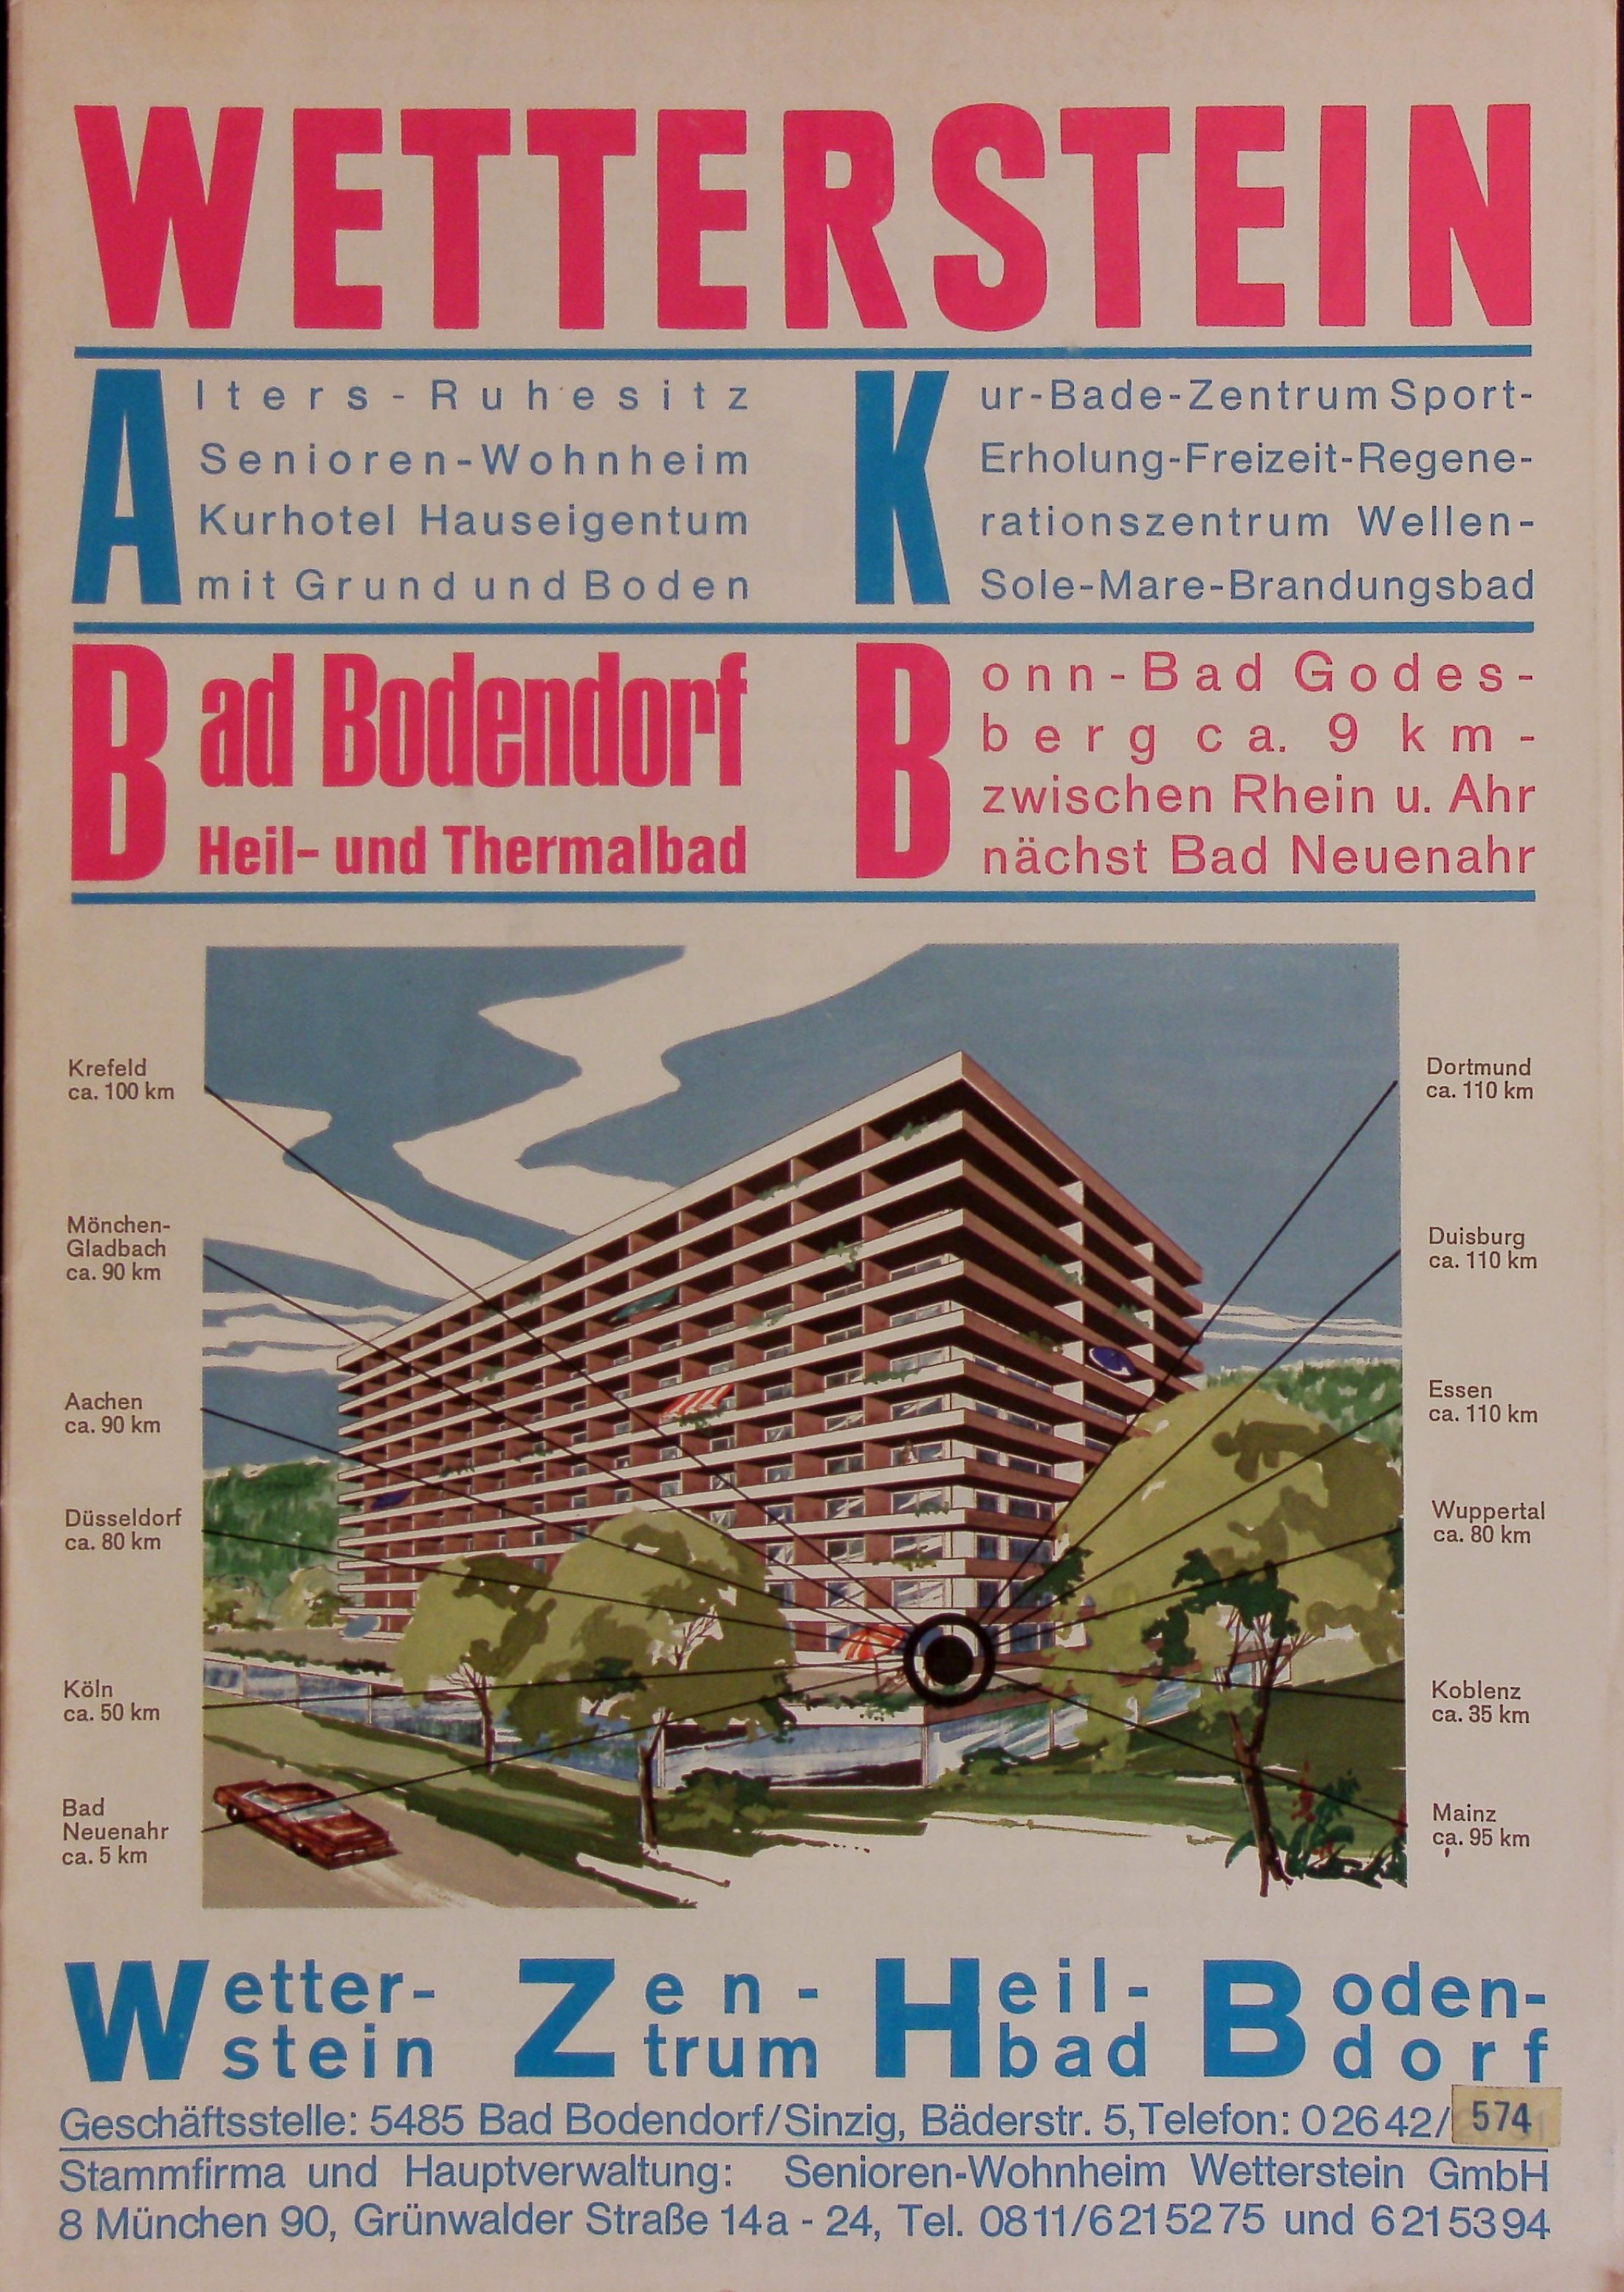 Werbeprospekt zum Wetterstein Zentrum Heilbad Bodendorf von 1973 (Heimatarchiv Bad Bodendorf CC BY-NC-SA)